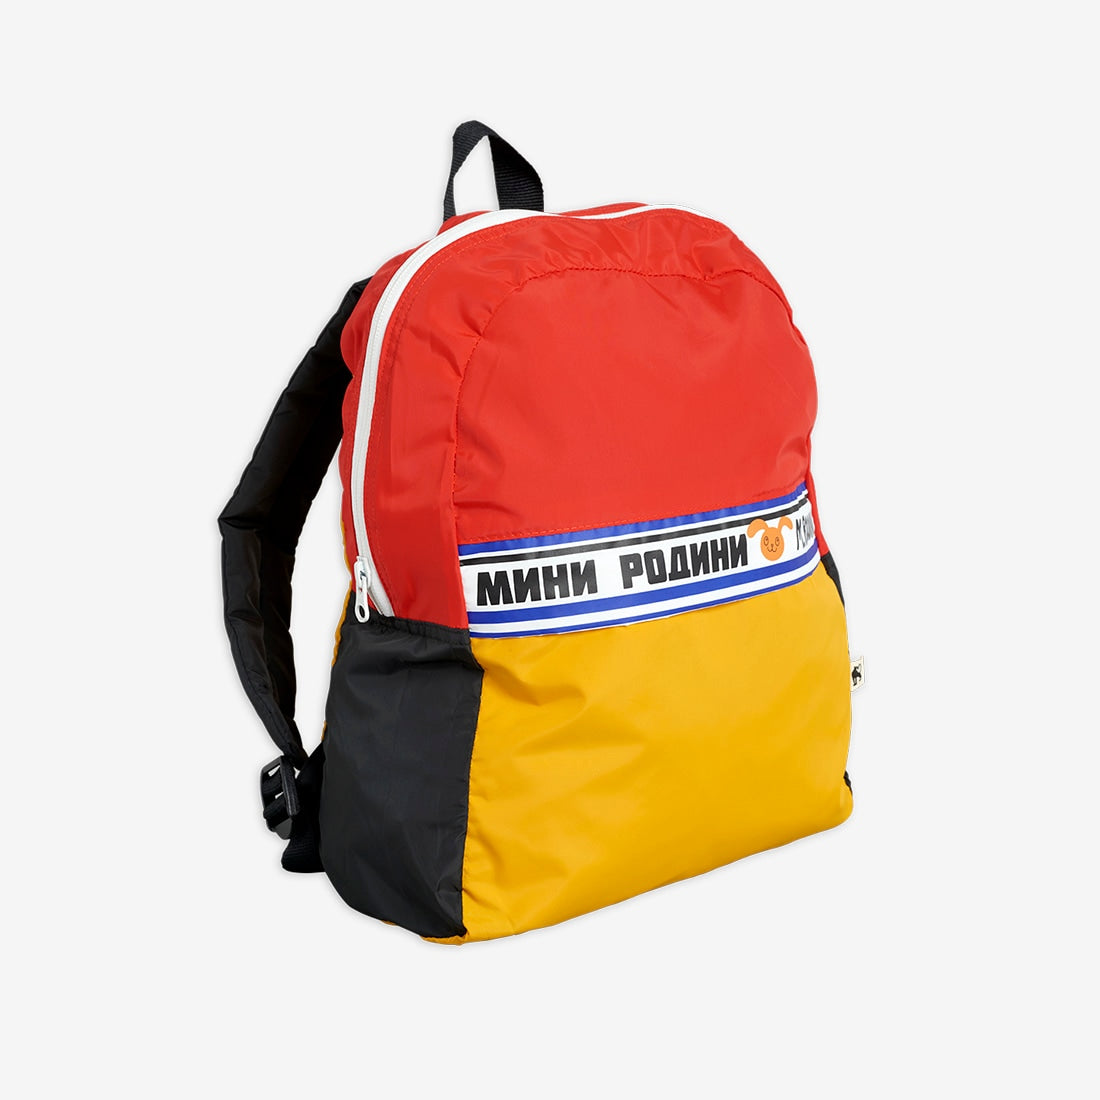 Mini Rodini Moscow backpack